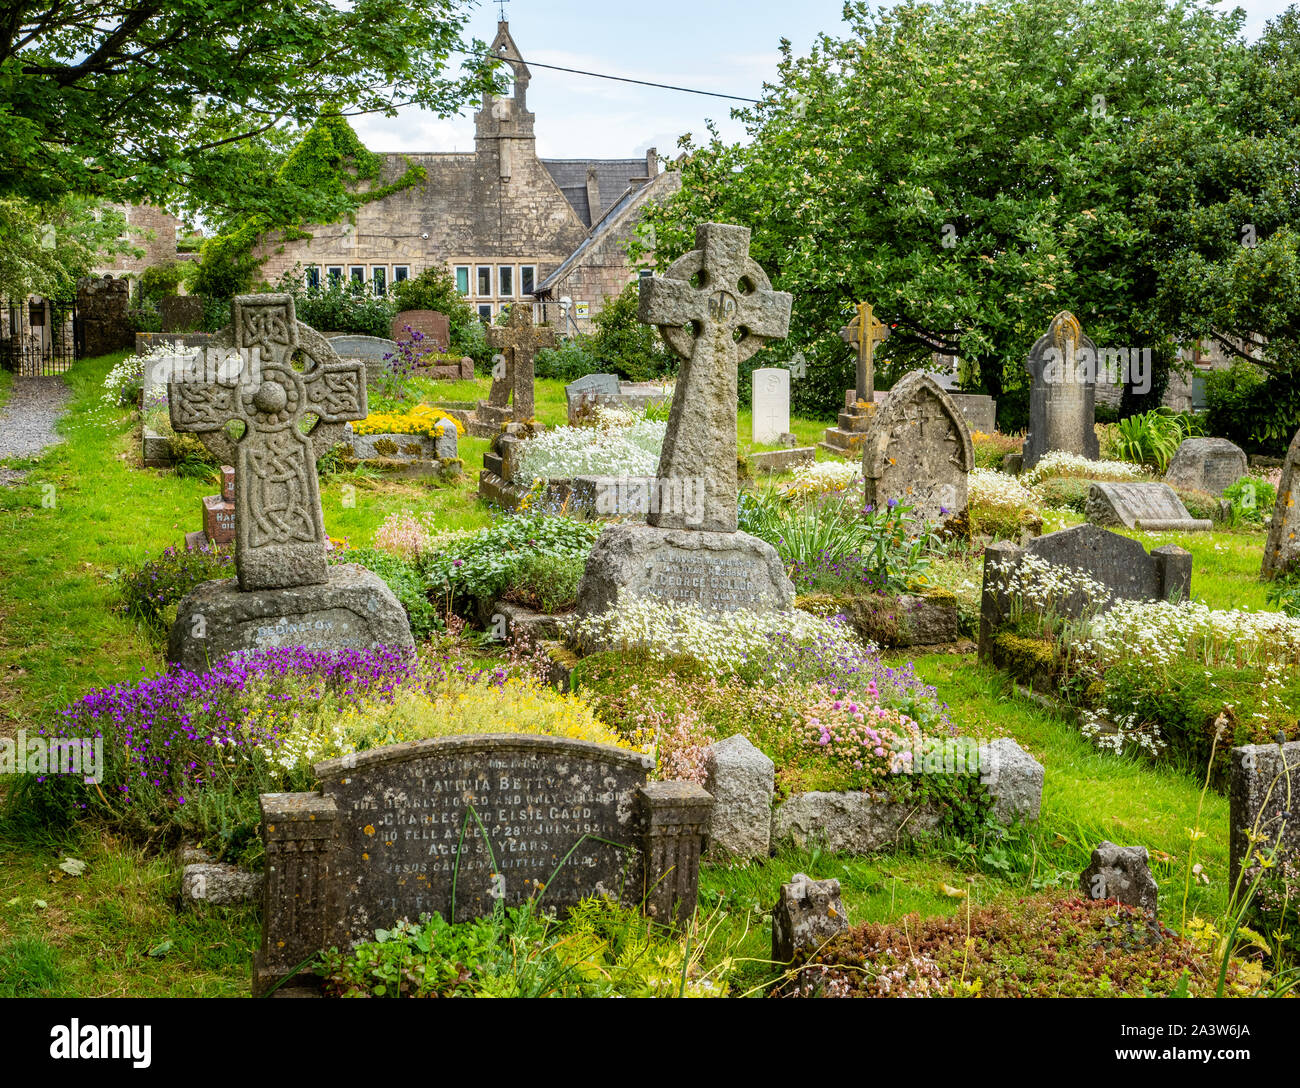 Cementerio de flores plantadas para atraer polinizadores como las abejas y mariposas en St Michael's iglesia parroquial Dundry aldea cerca de Bristol en Somerset, Reino Unido Foto de stock